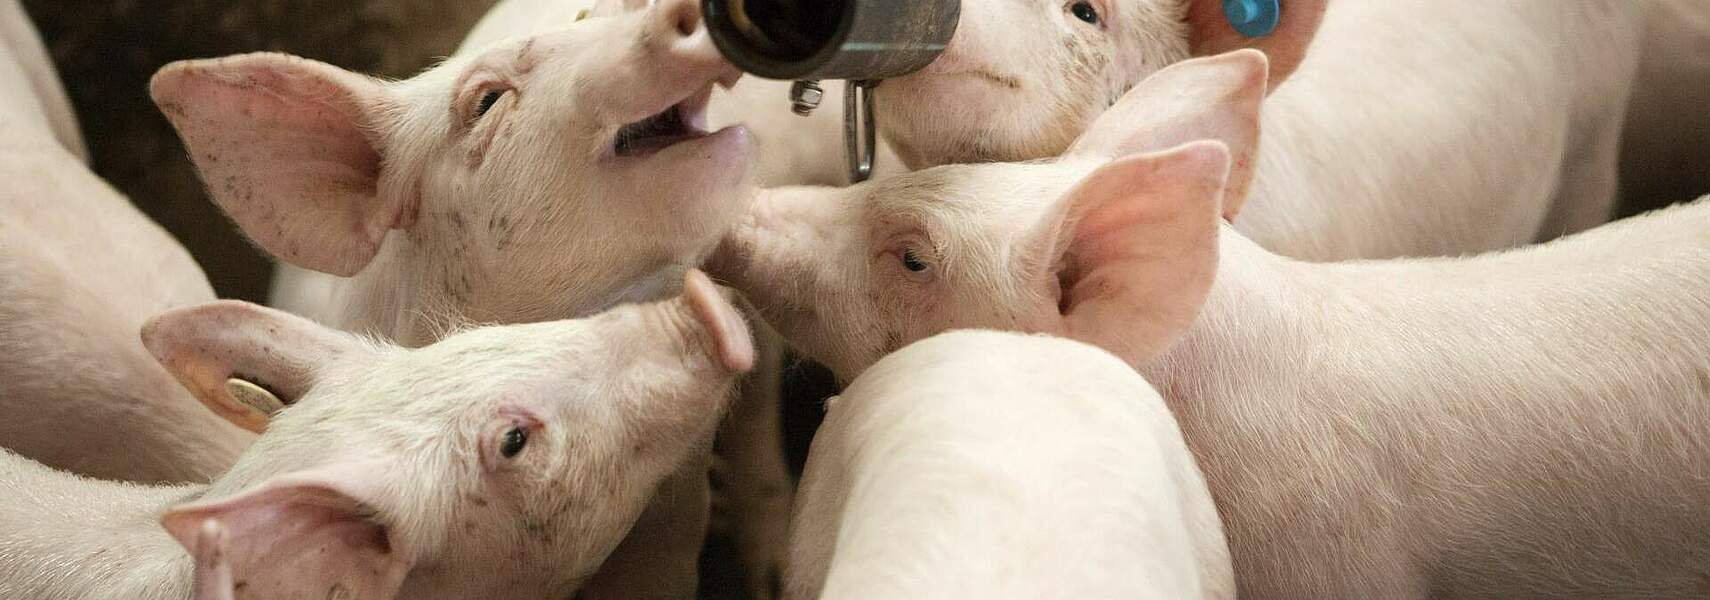 Preisverfall der Schlachtschweine: Schweinehalter enorm unter Druck